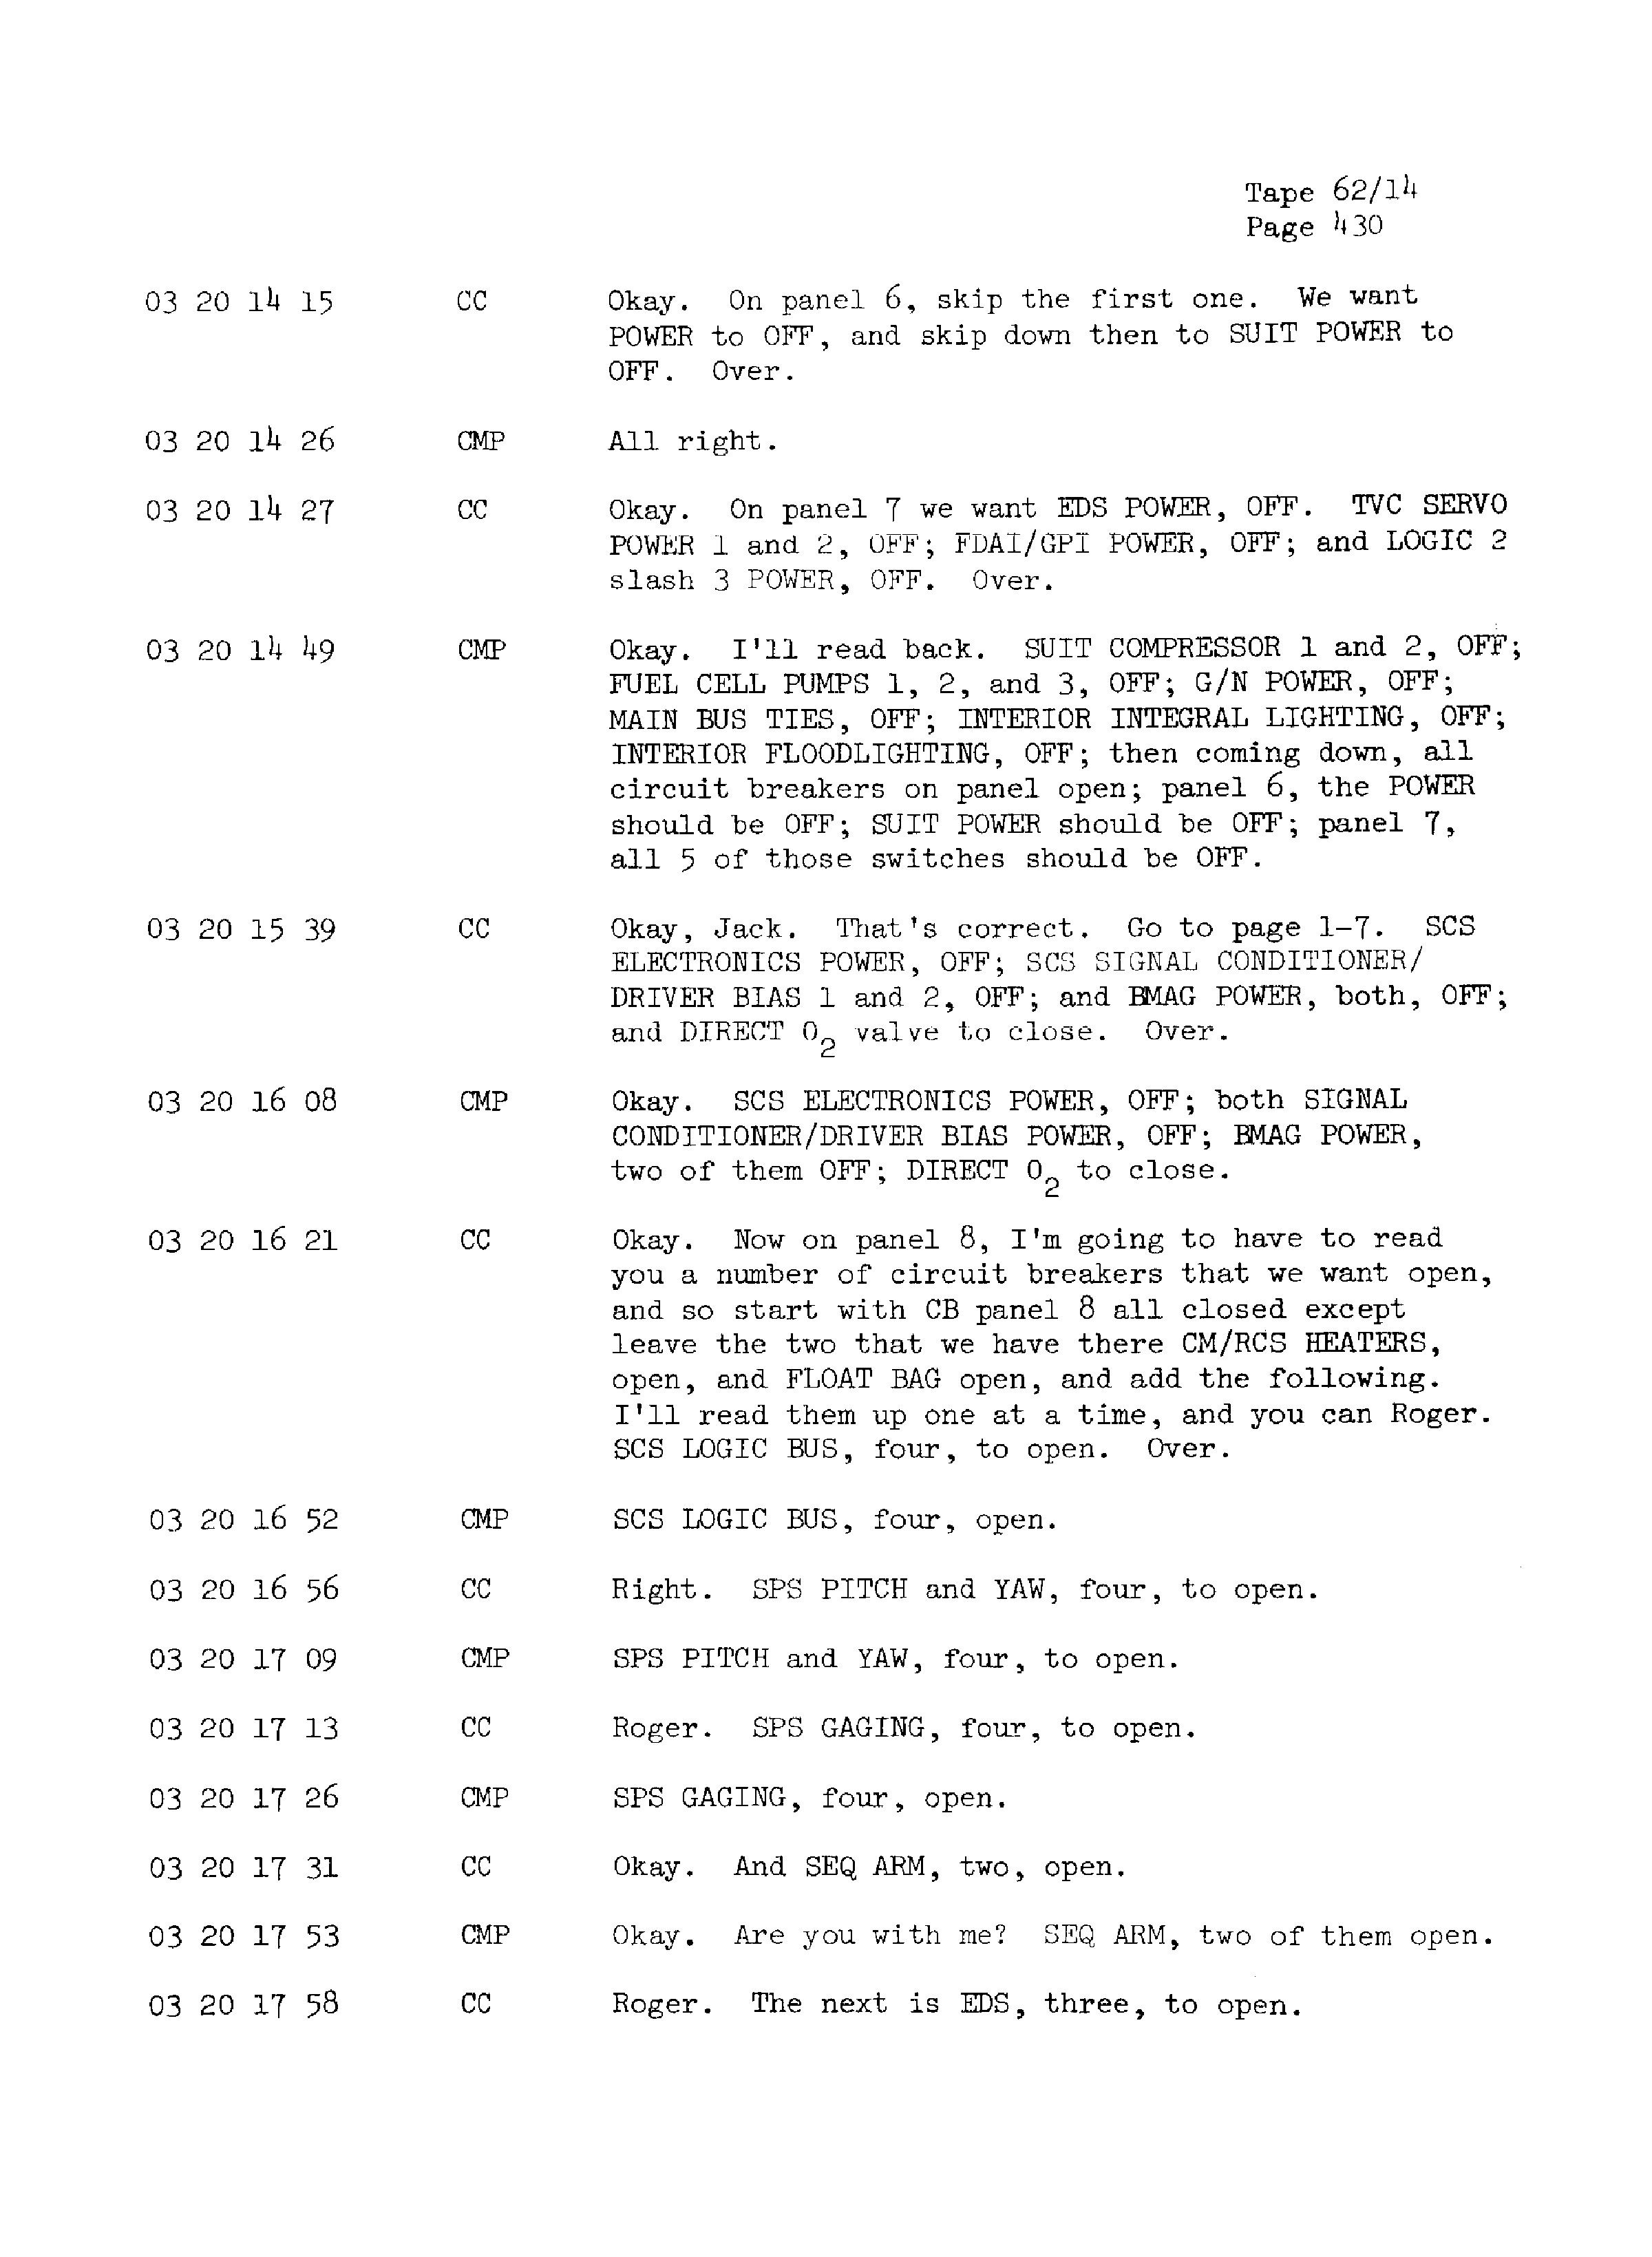 Page 437 of Apollo 13’s original transcript